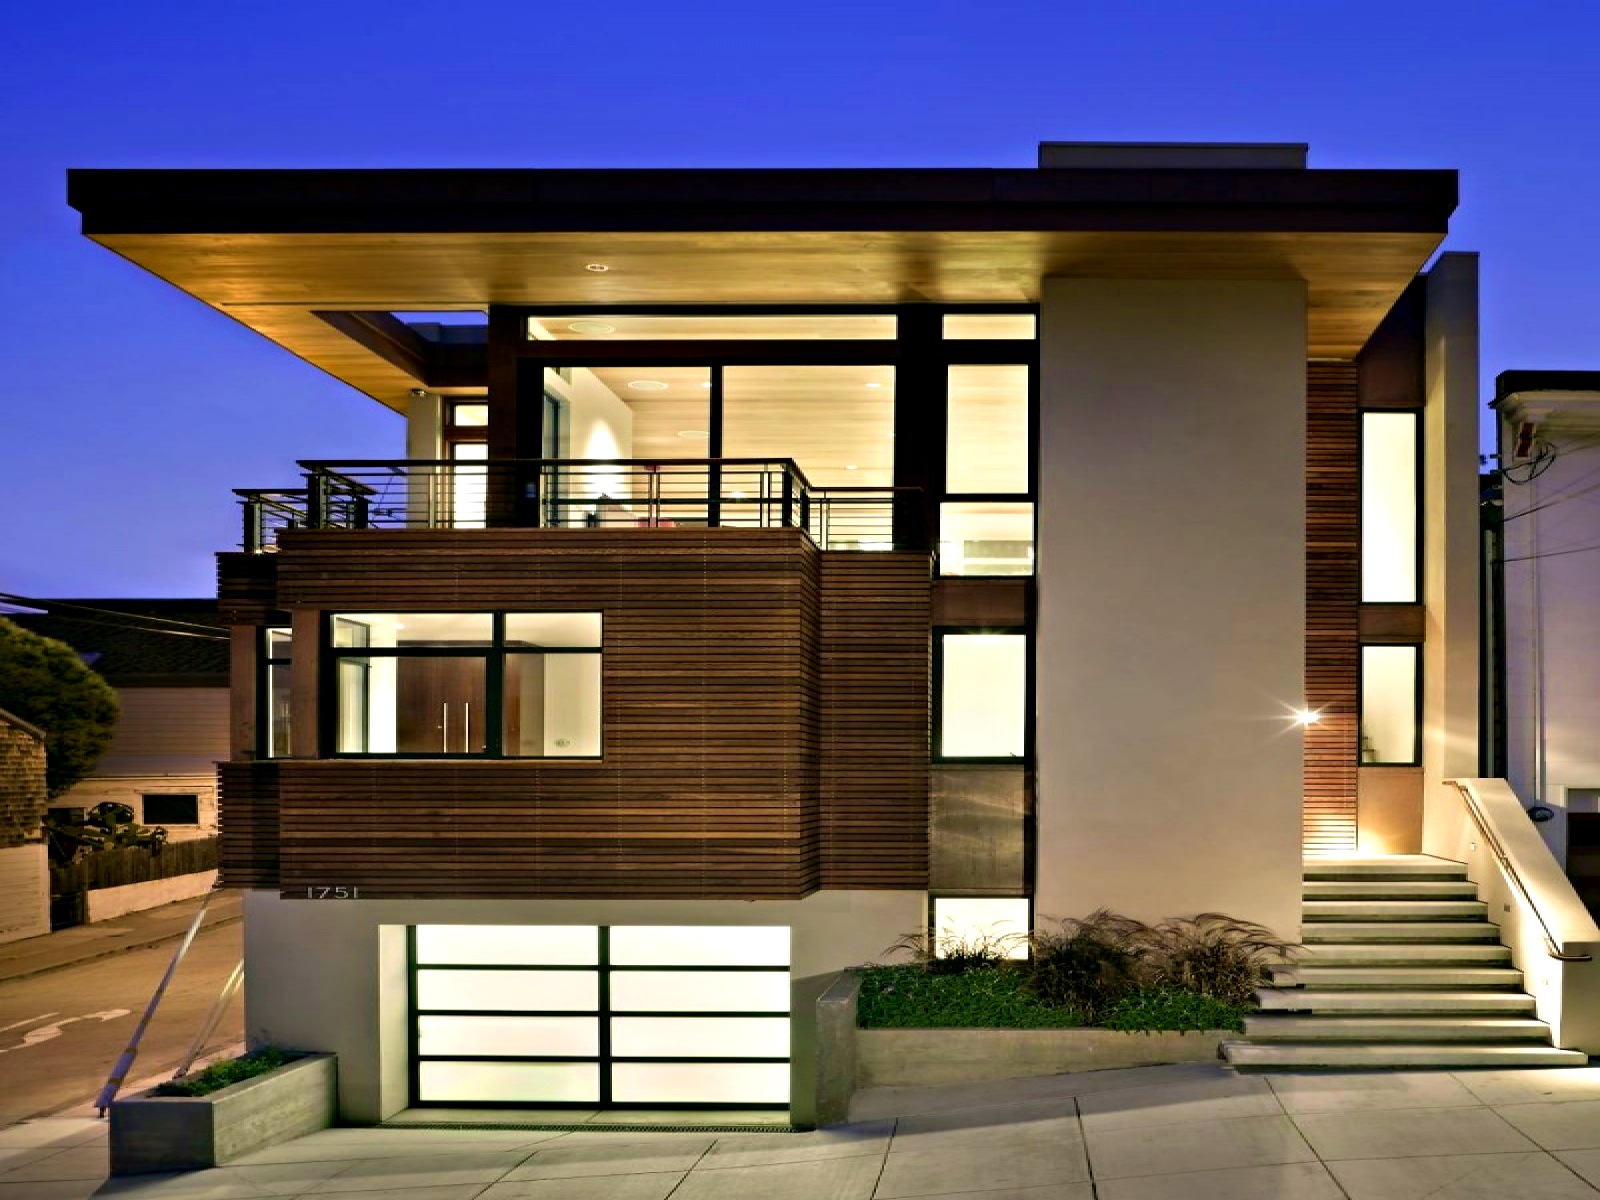 Transform Dream into Reality for Custom Home Builder